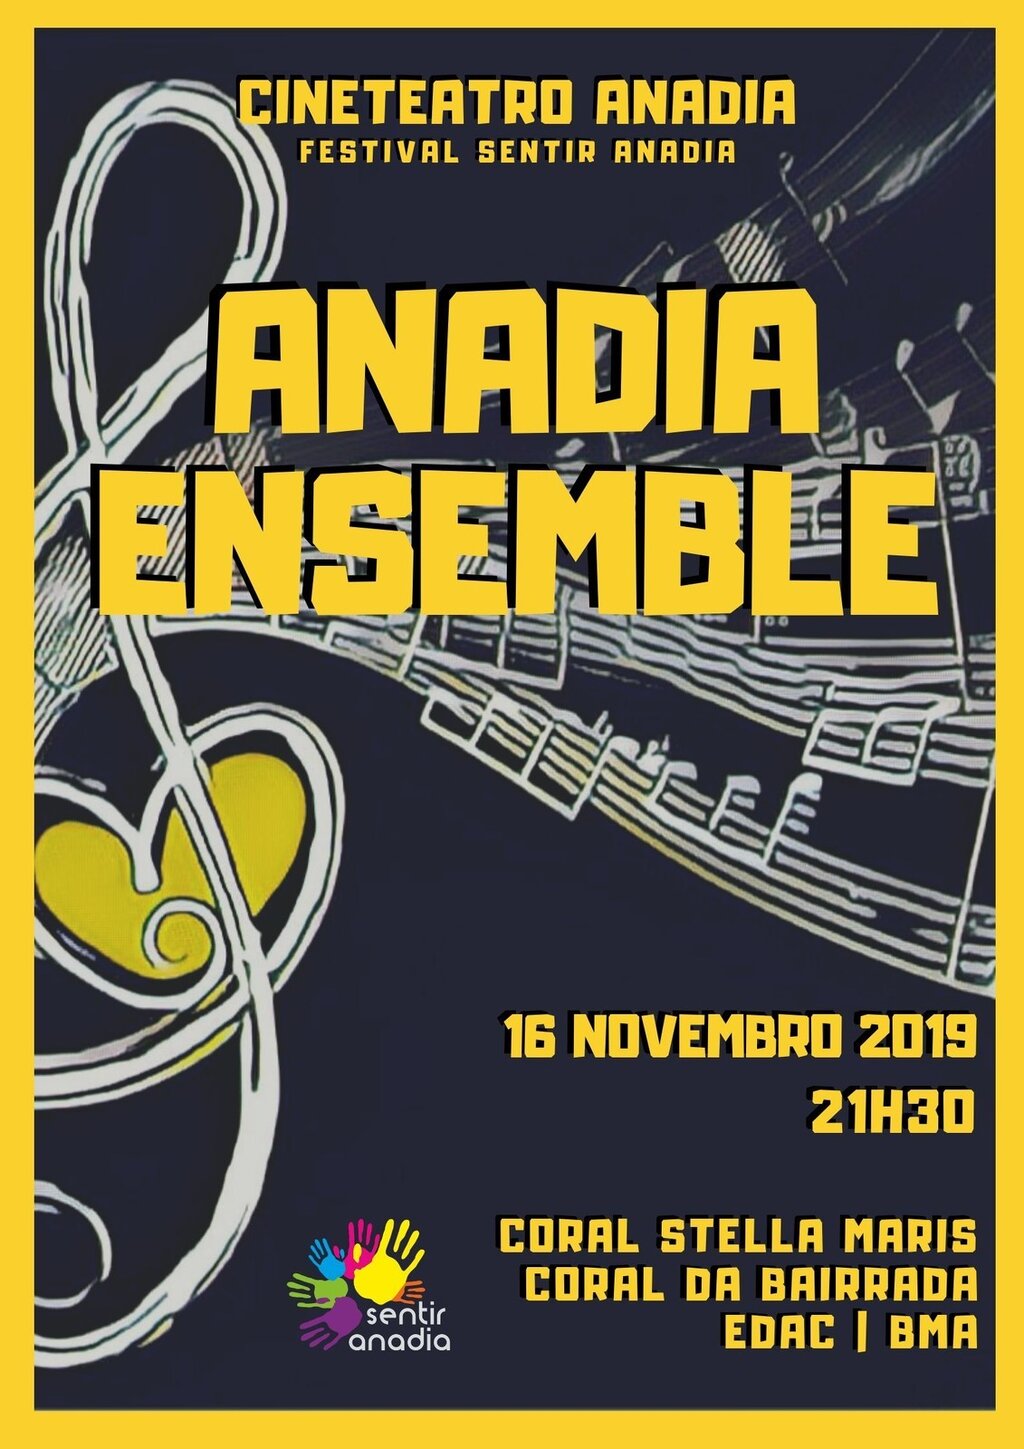 Anadia Ensemble